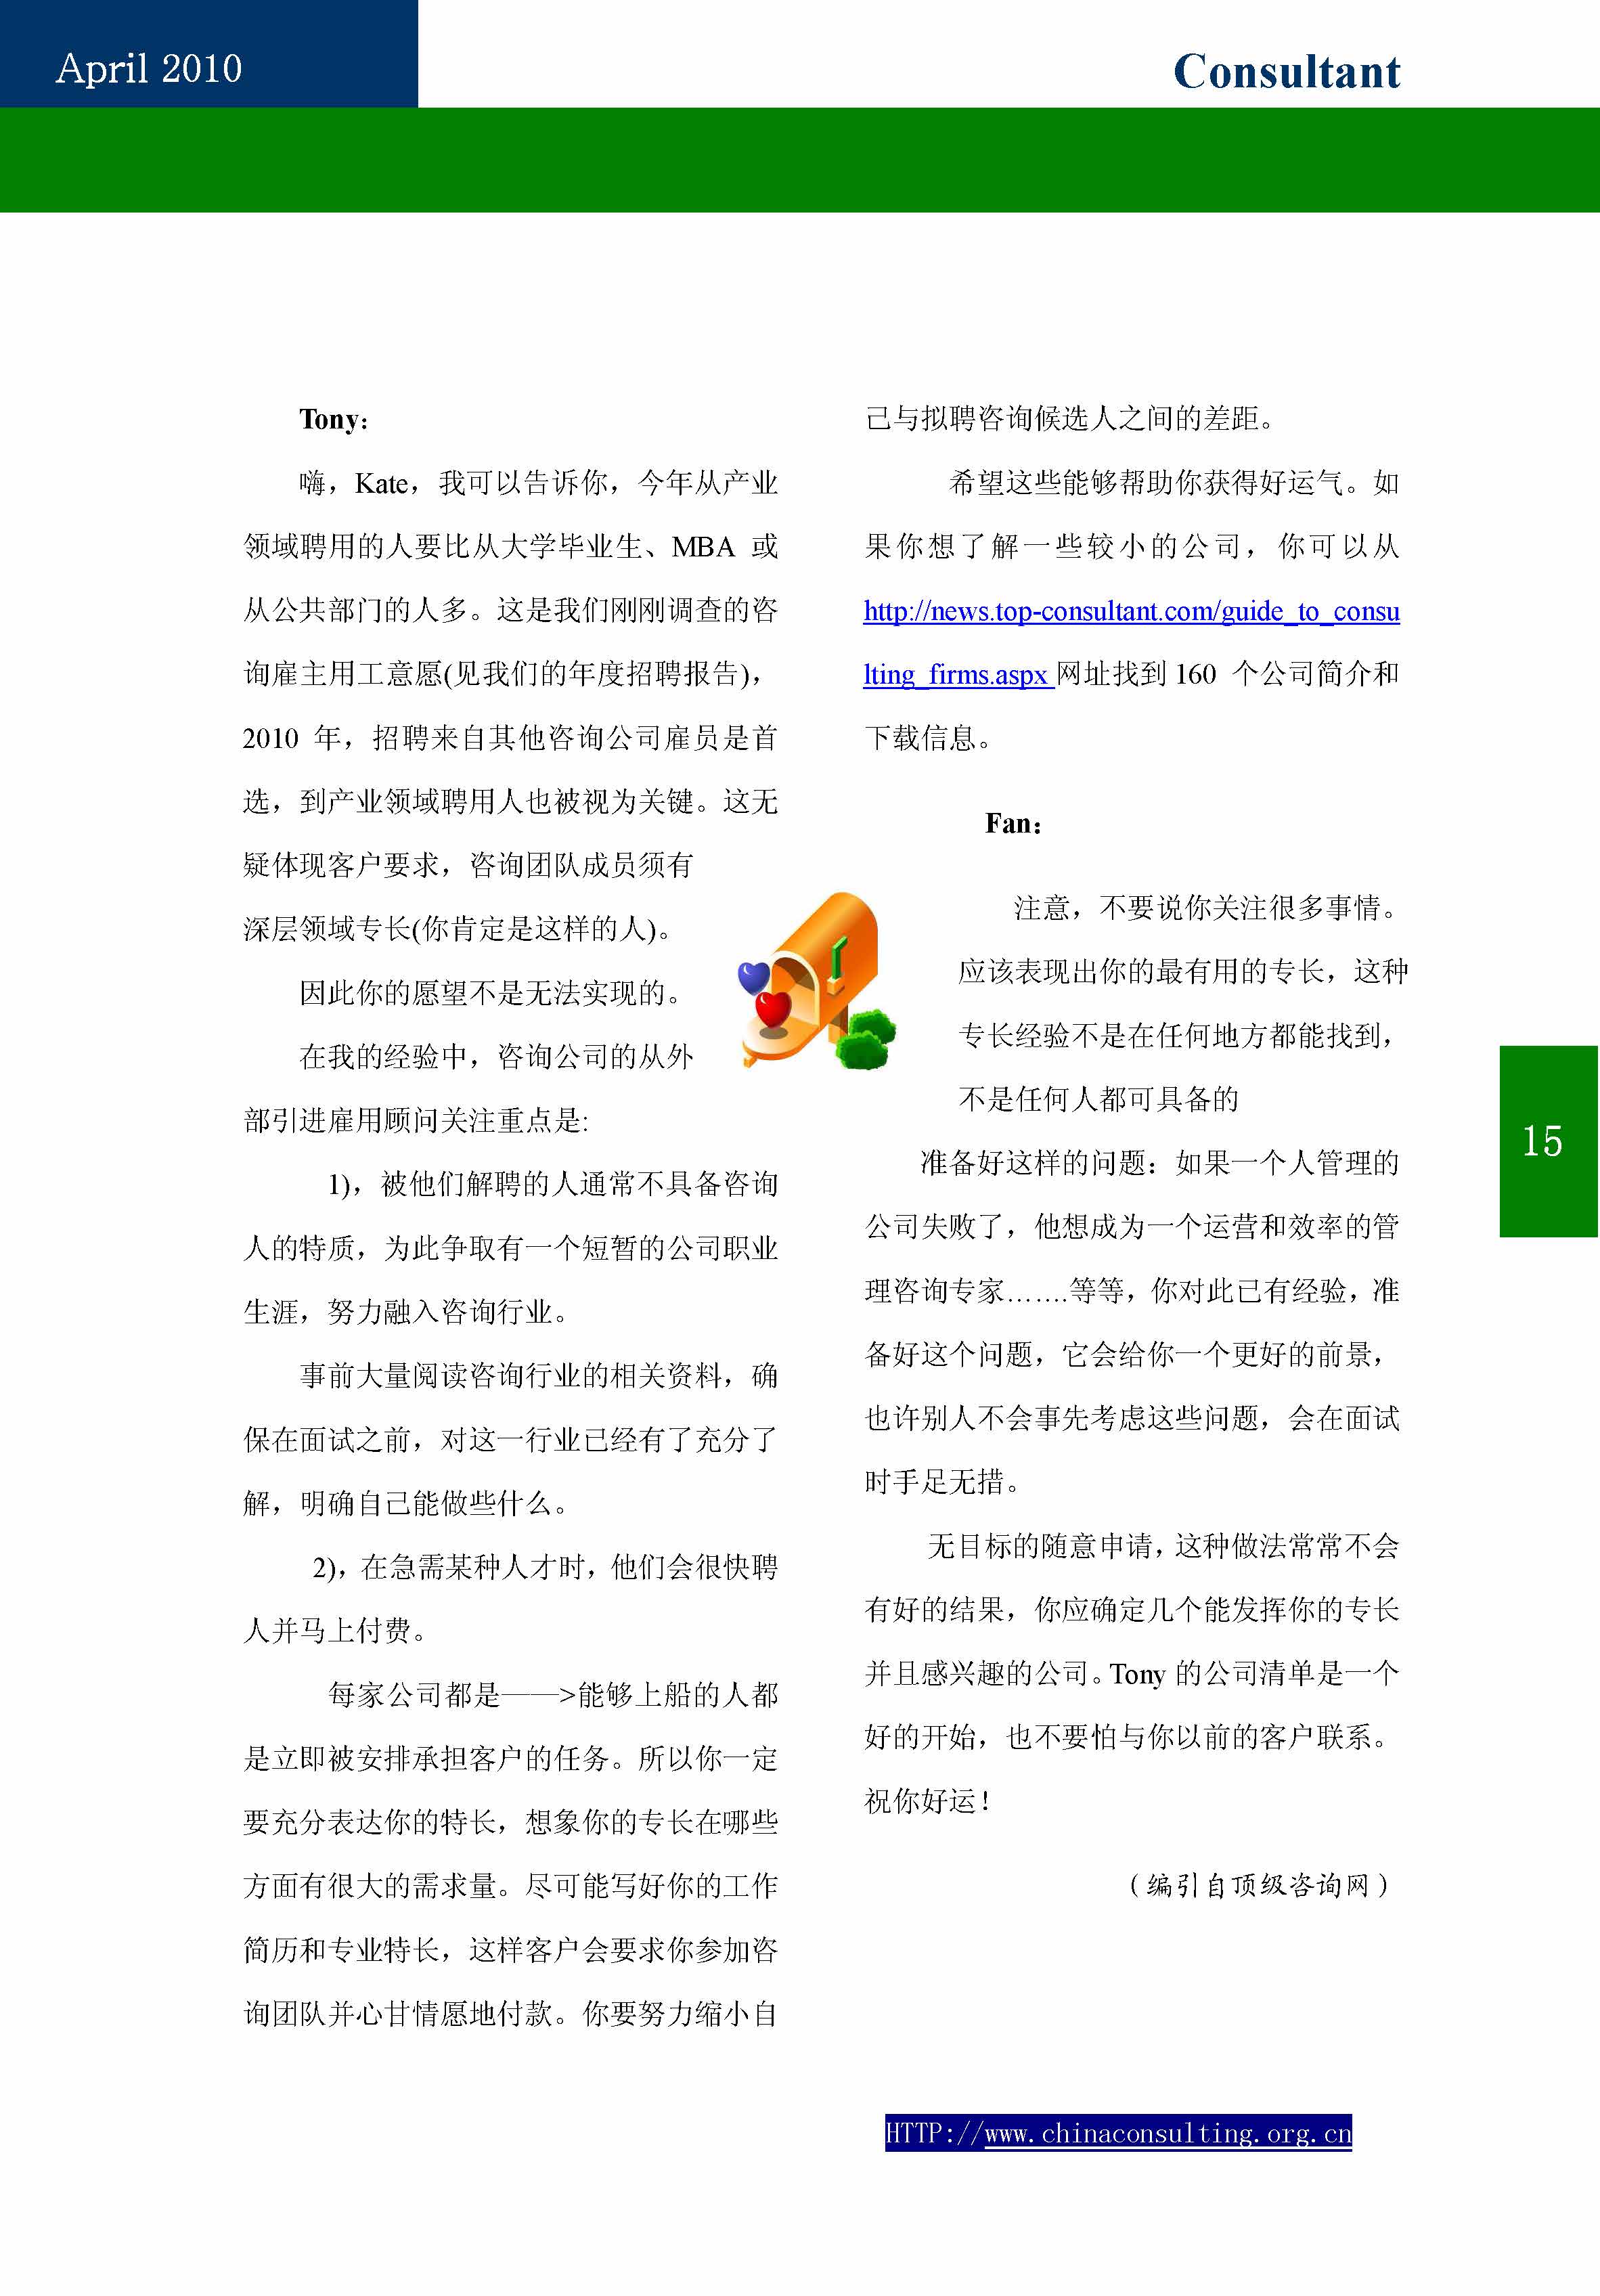 9中国科技咨询协会第九期会刊_页面_17.jpg